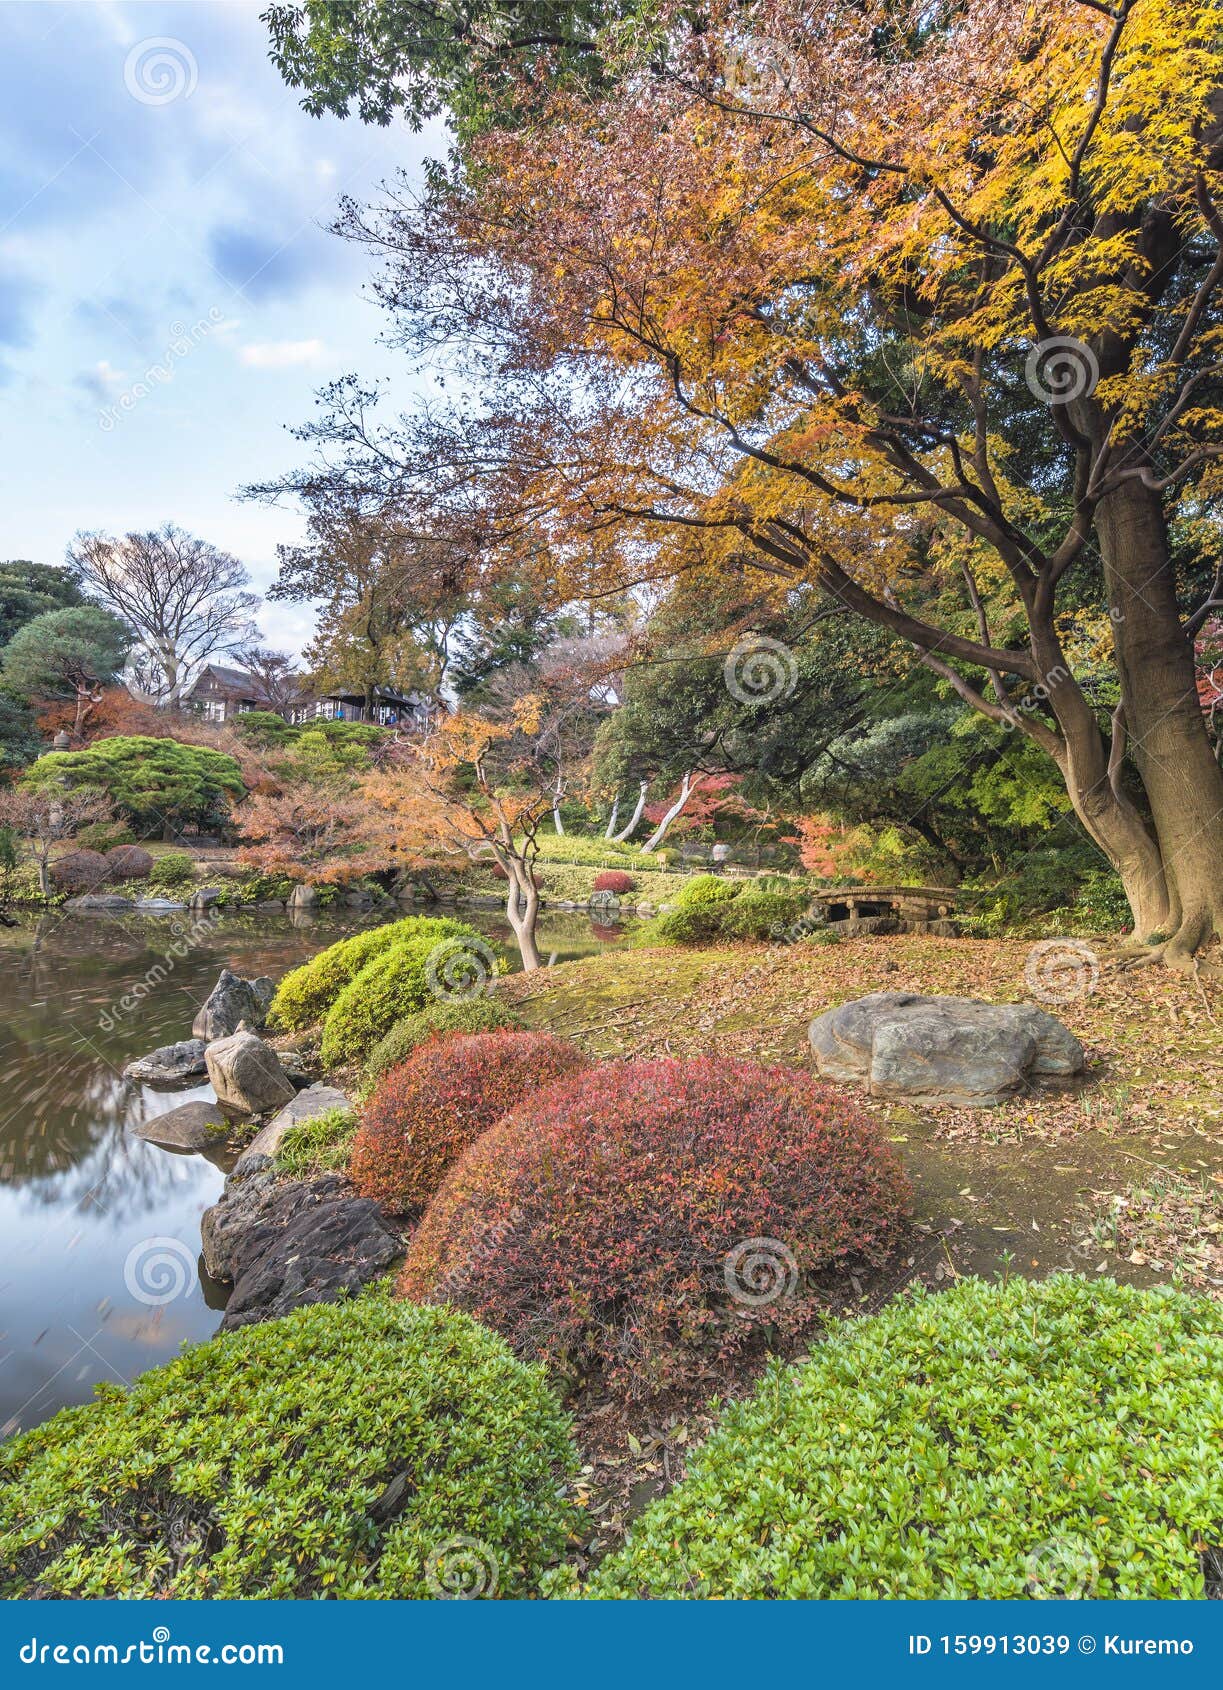 东京都公园古川日式花园的新池 秋天可以俯瞰红枫桃枝叶库存图片 图片包括有天空 日语 水平 本质